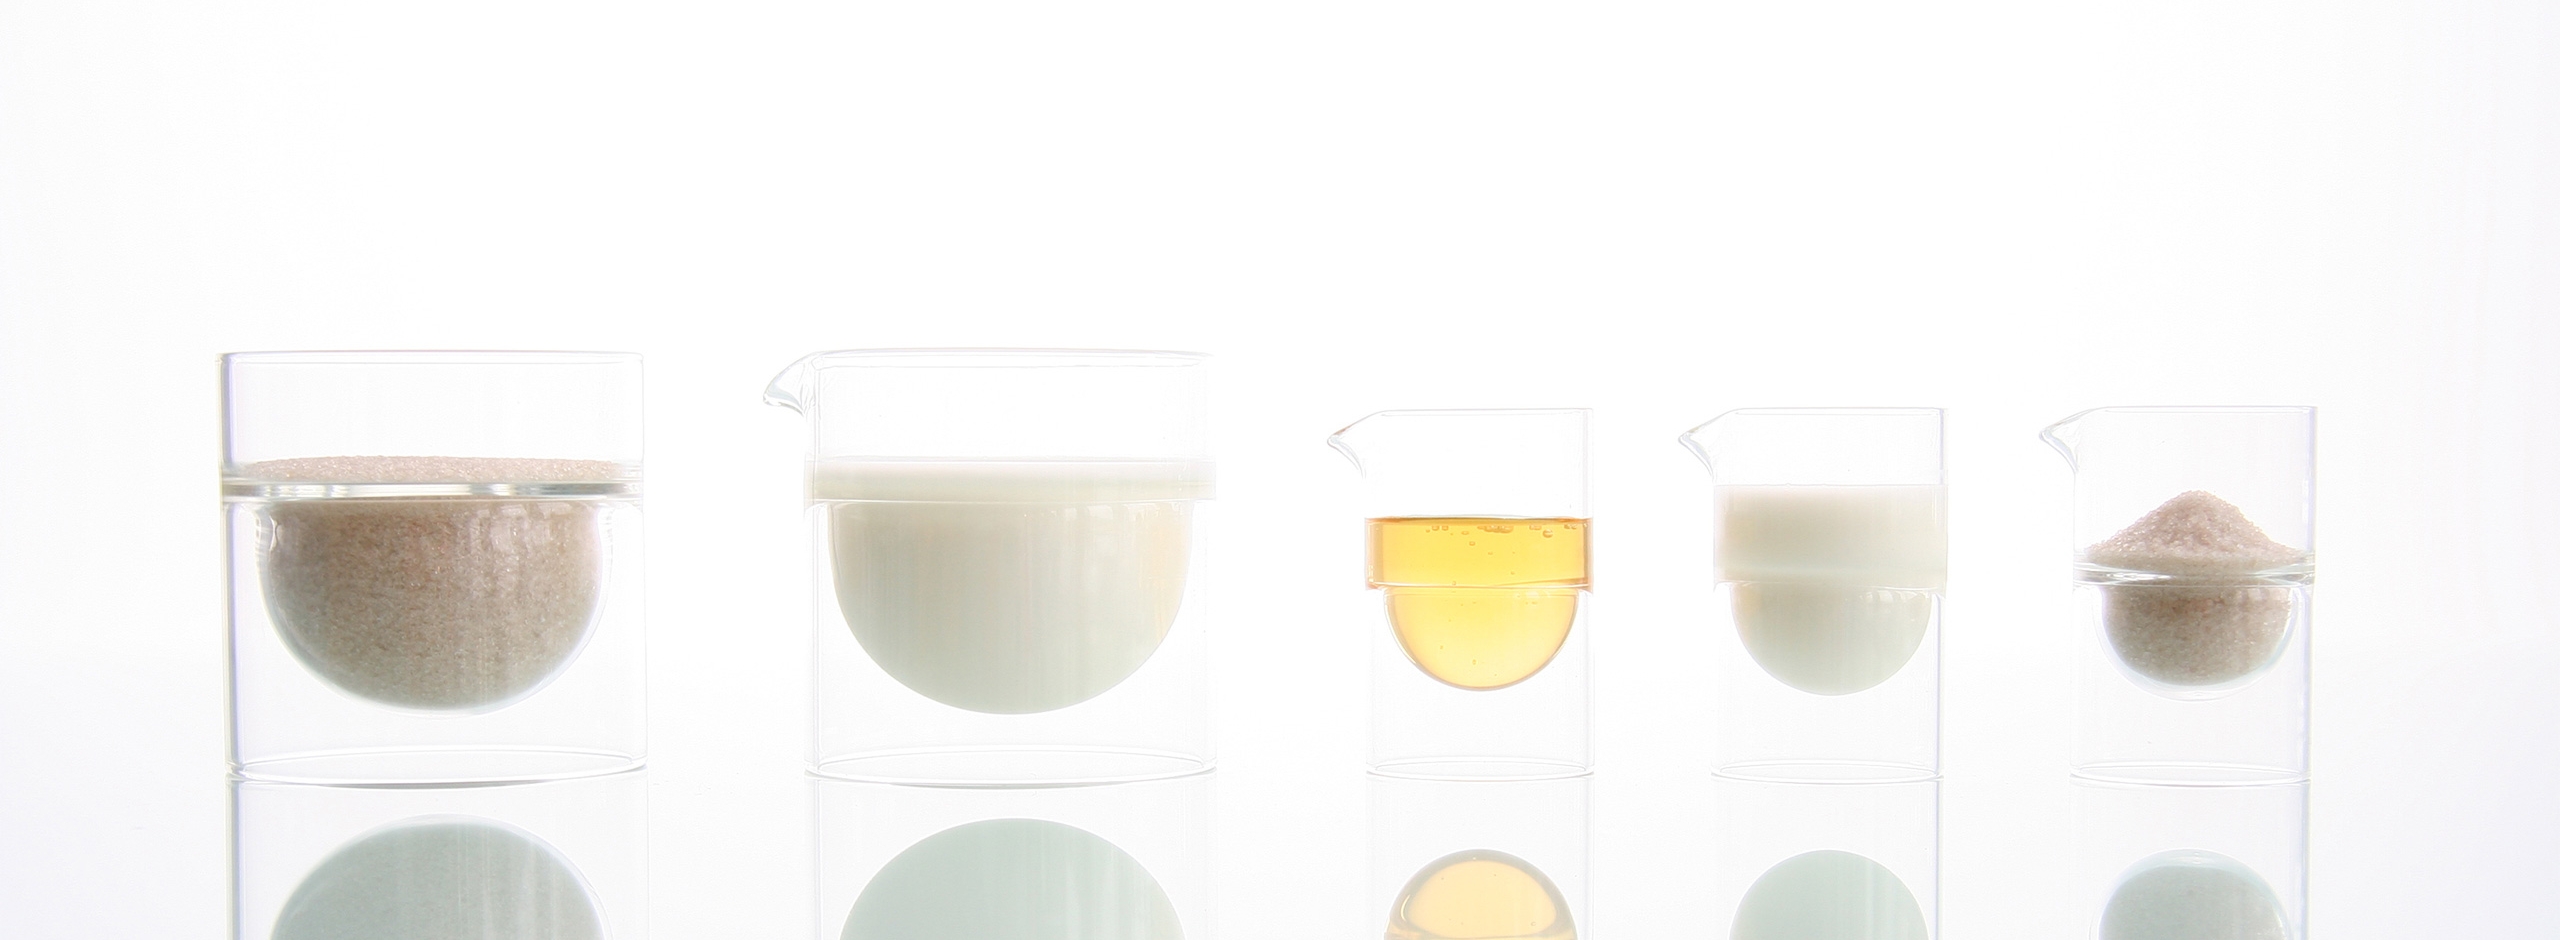 float glassware - Sugar - Cream Set